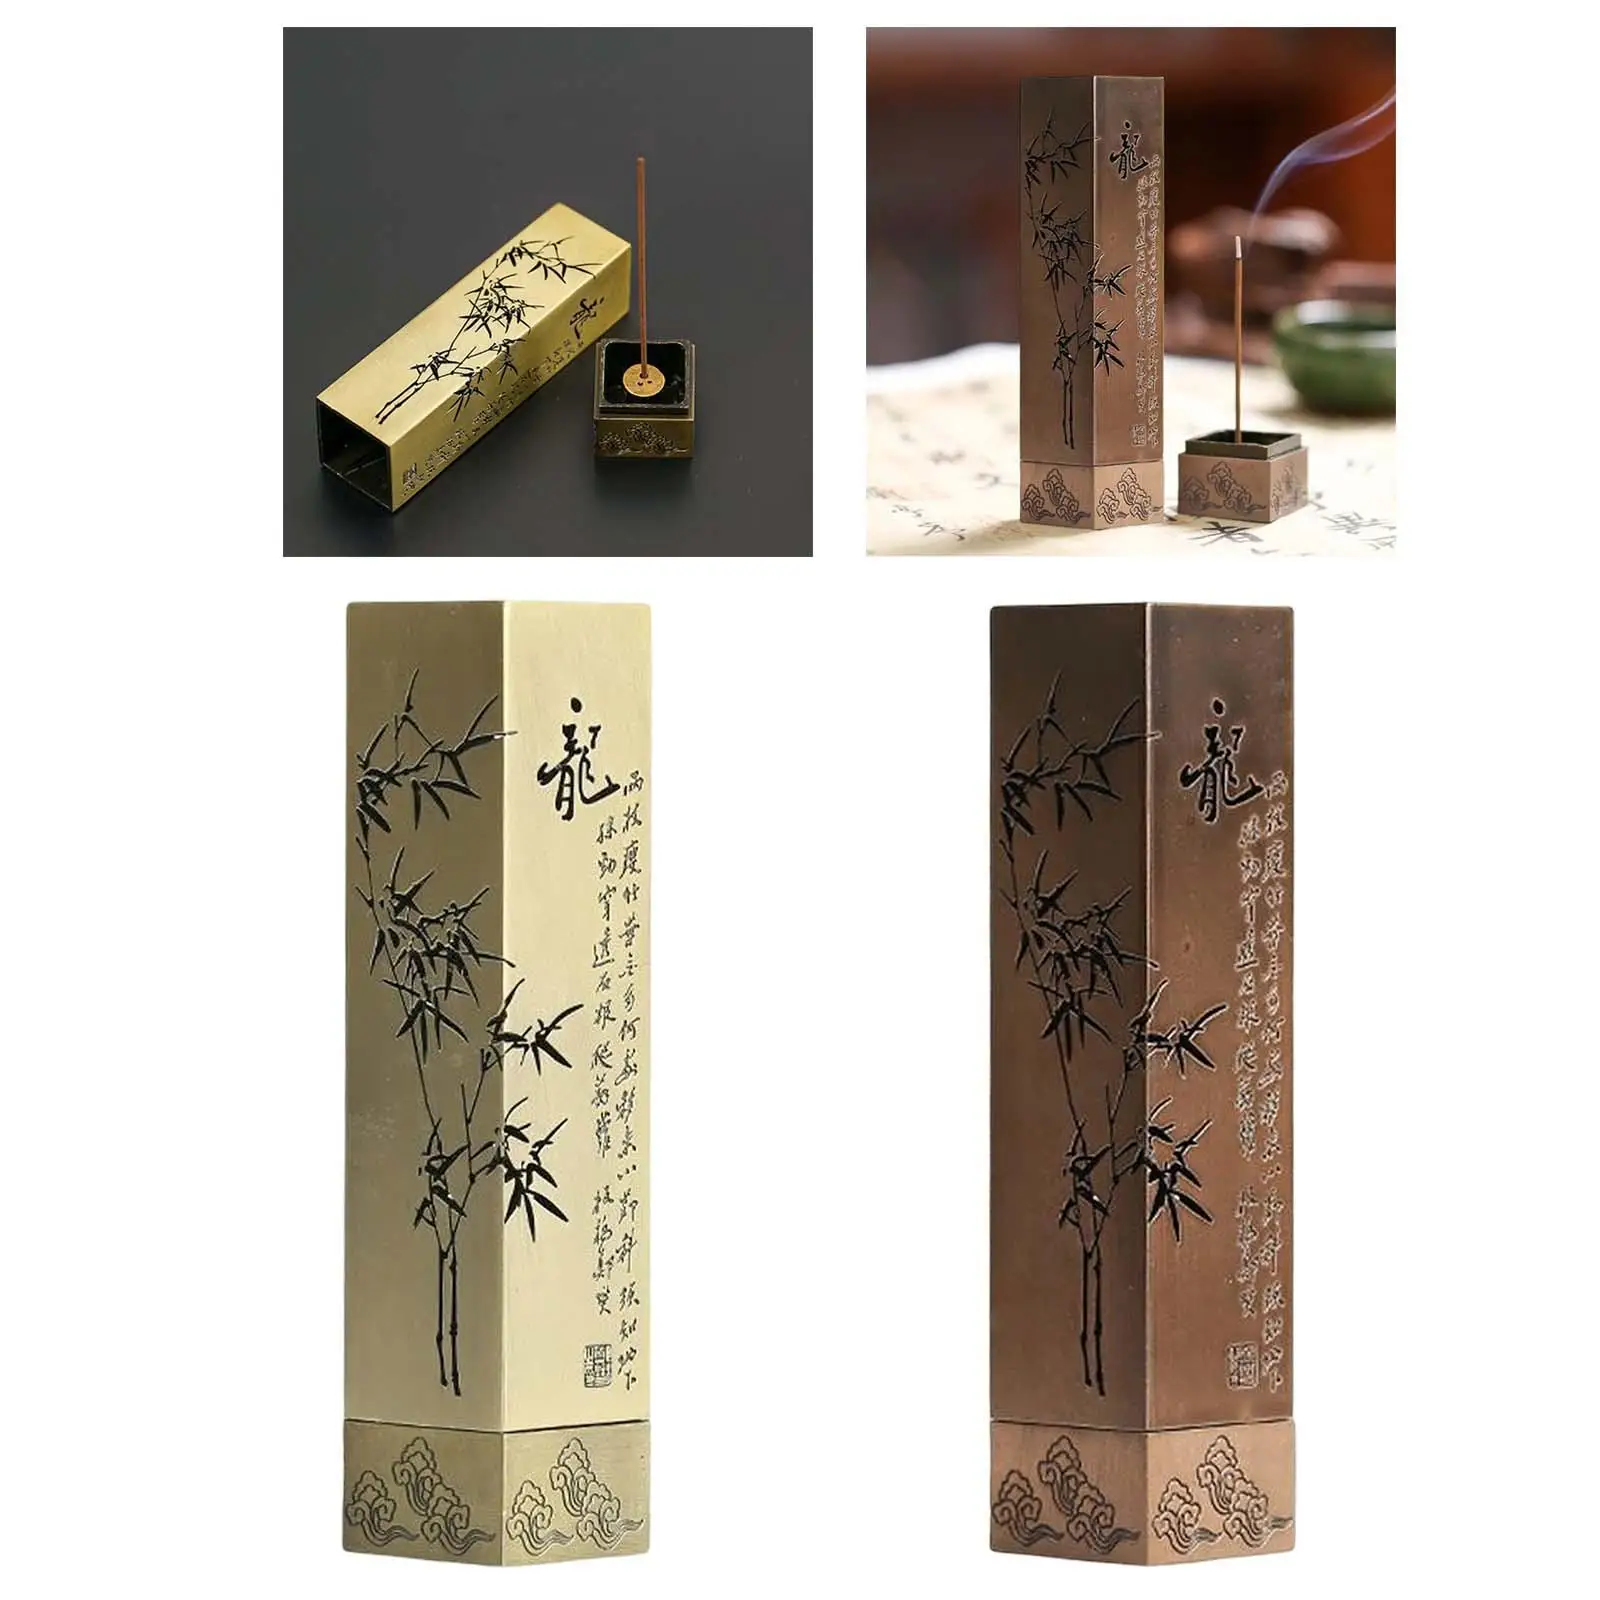 Vintage Style Incense Burner Box Artwork with Lid Ash Catcher Insences Stick Burner for Birthday Gift Bedroom yoga Ornament